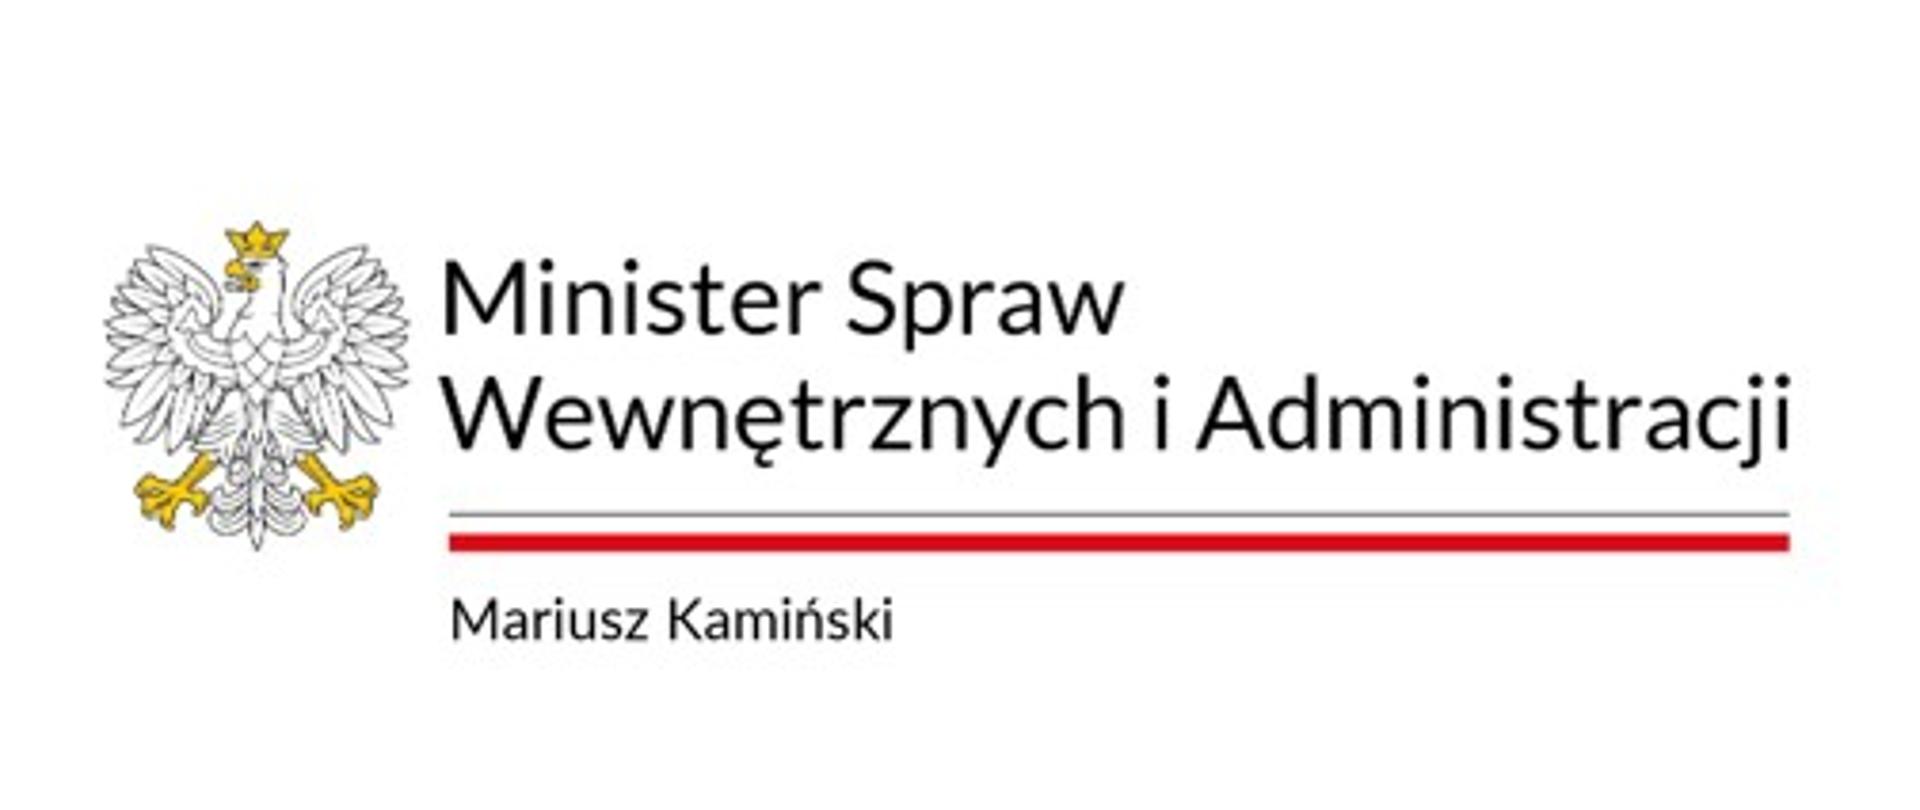 Logo Minister Spraw Wewnętrznych i Administracji